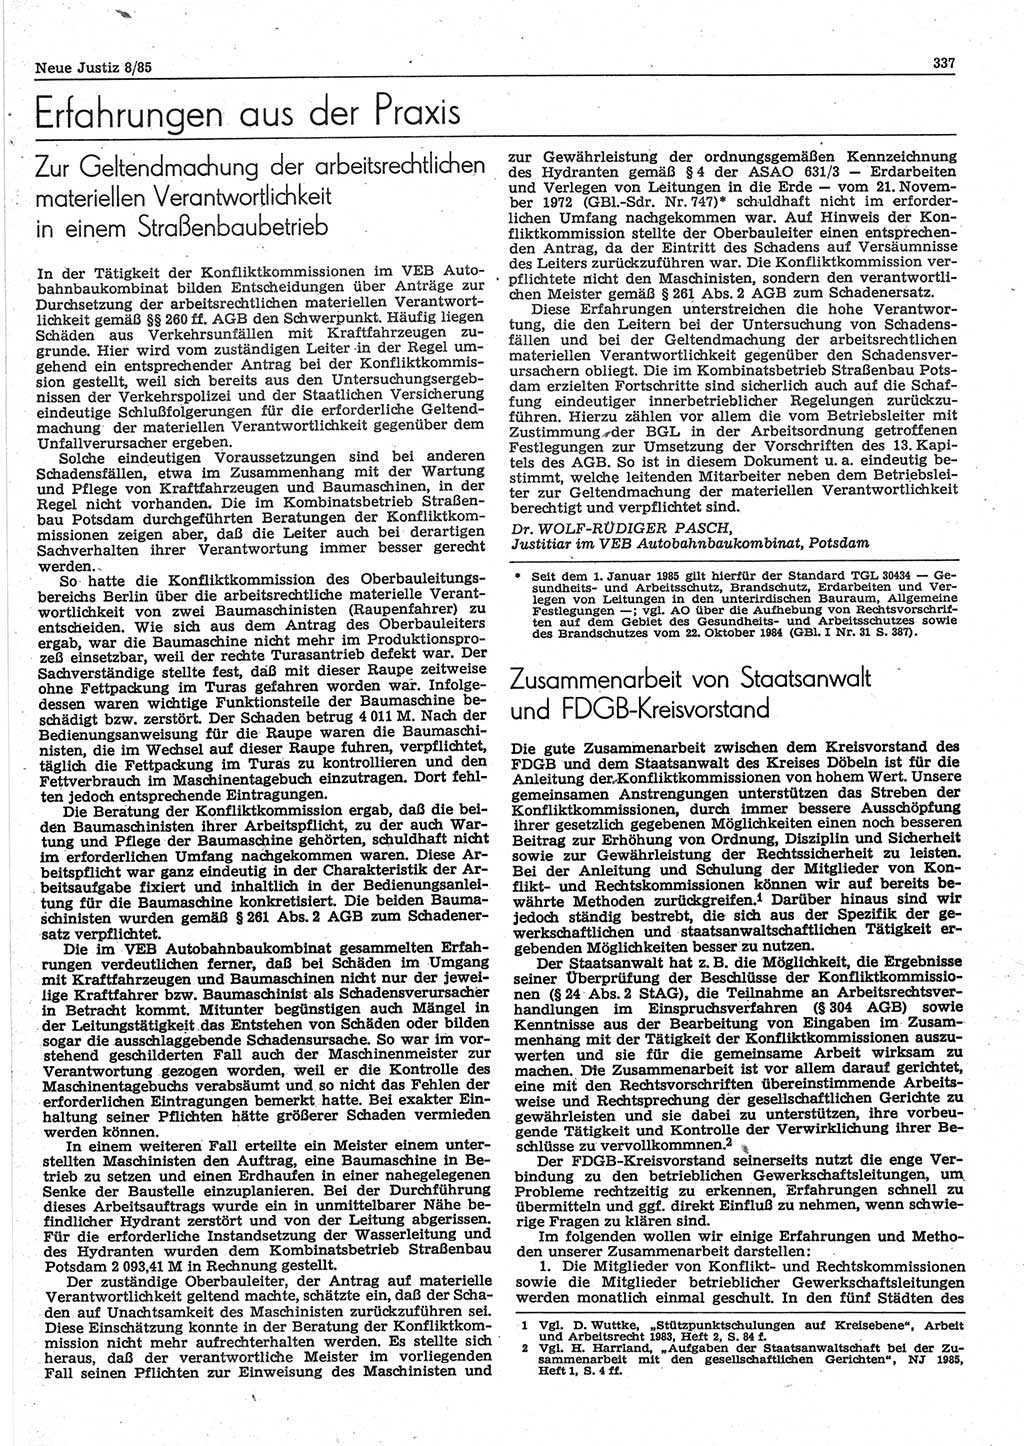 Neue Justiz (NJ), Zeitschrift für sozialistisches Recht und Gesetzlichkeit [Deutsche Demokratische Republik (DDR)], 39. Jahrgang 1985, Seite 337 (NJ DDR 1985, S. 337)